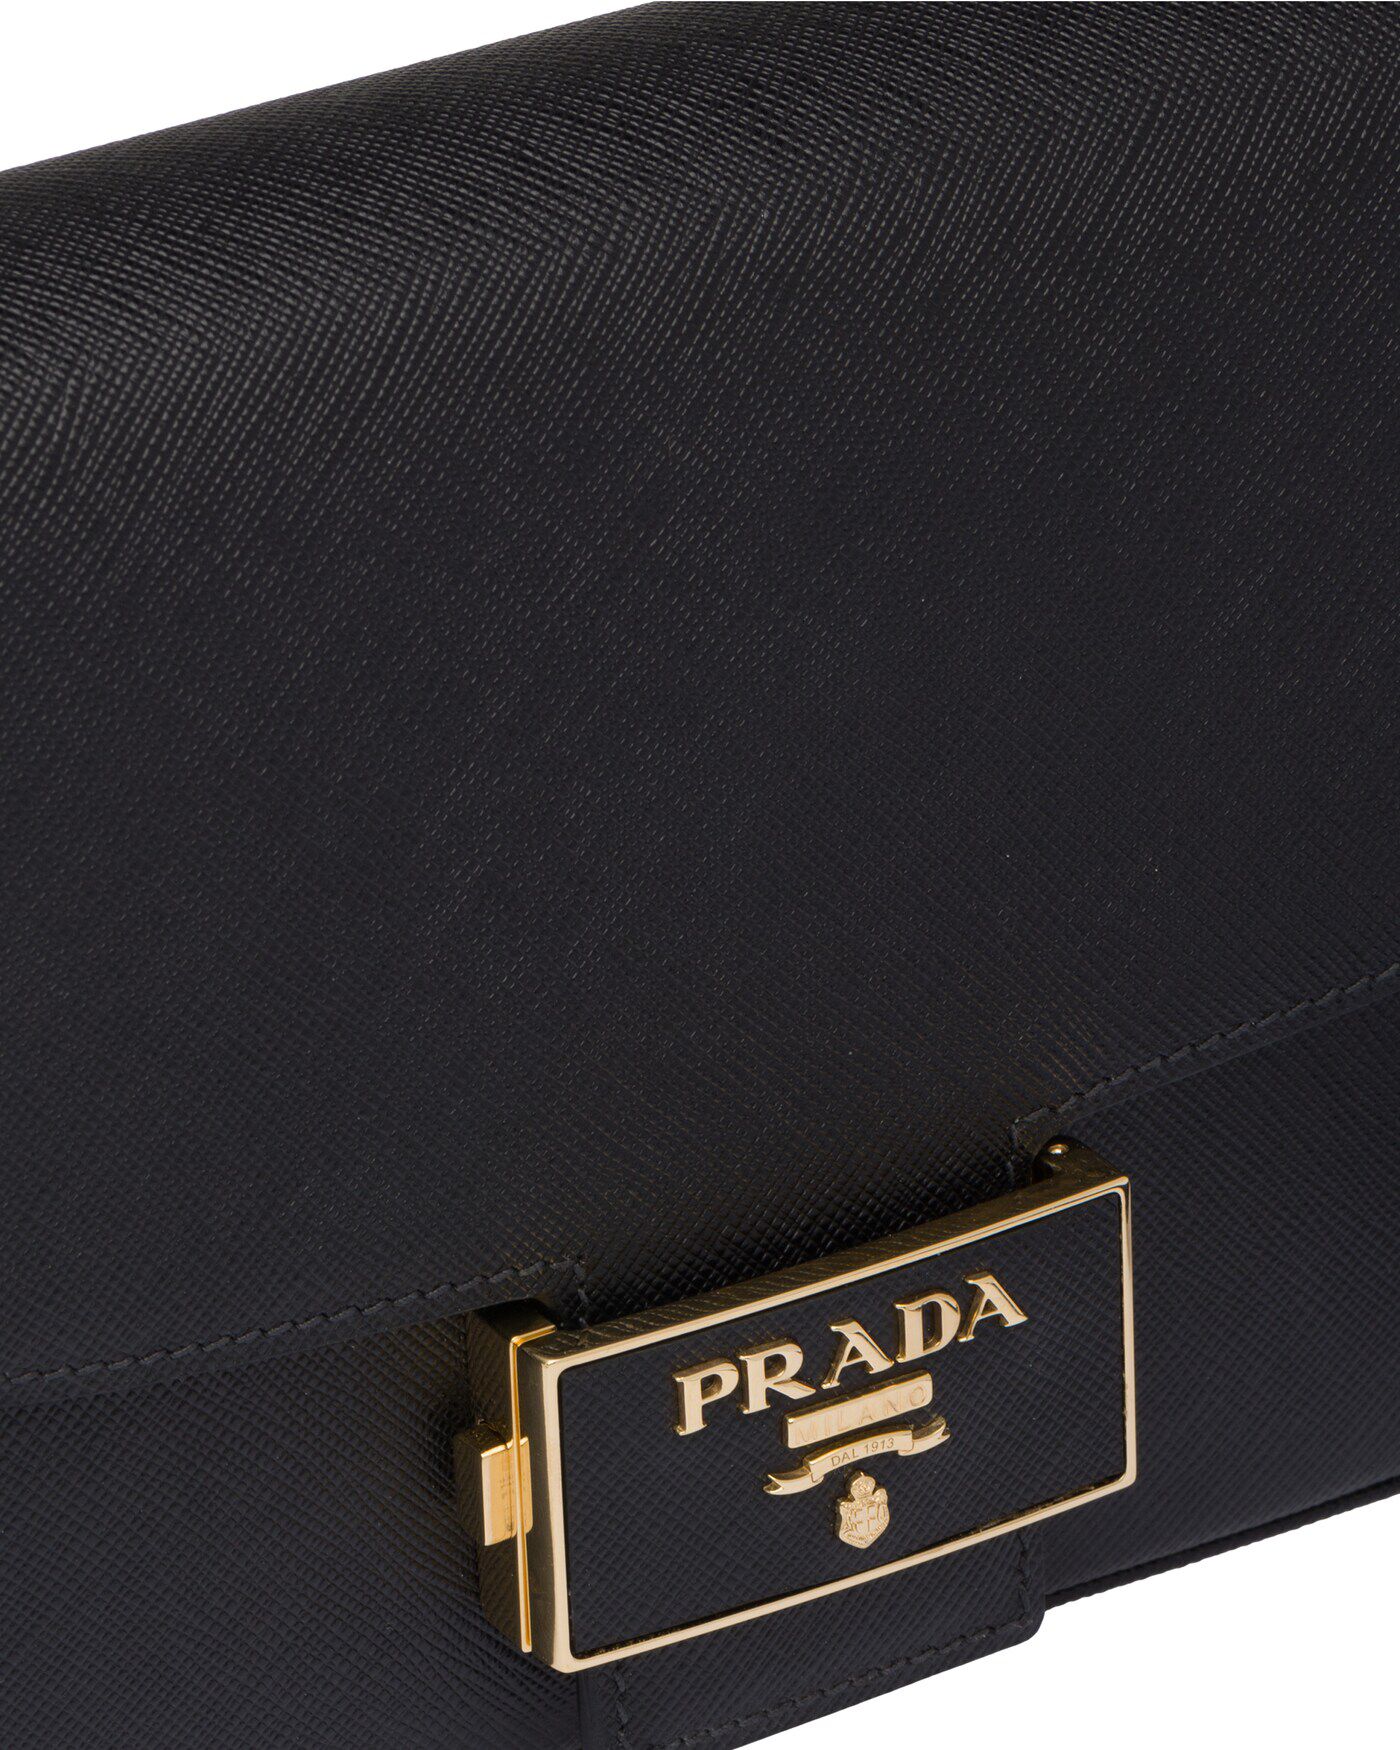 Prada Saffiano Leather Prada Emblème Bag Shoulder | Heathrow Boutique